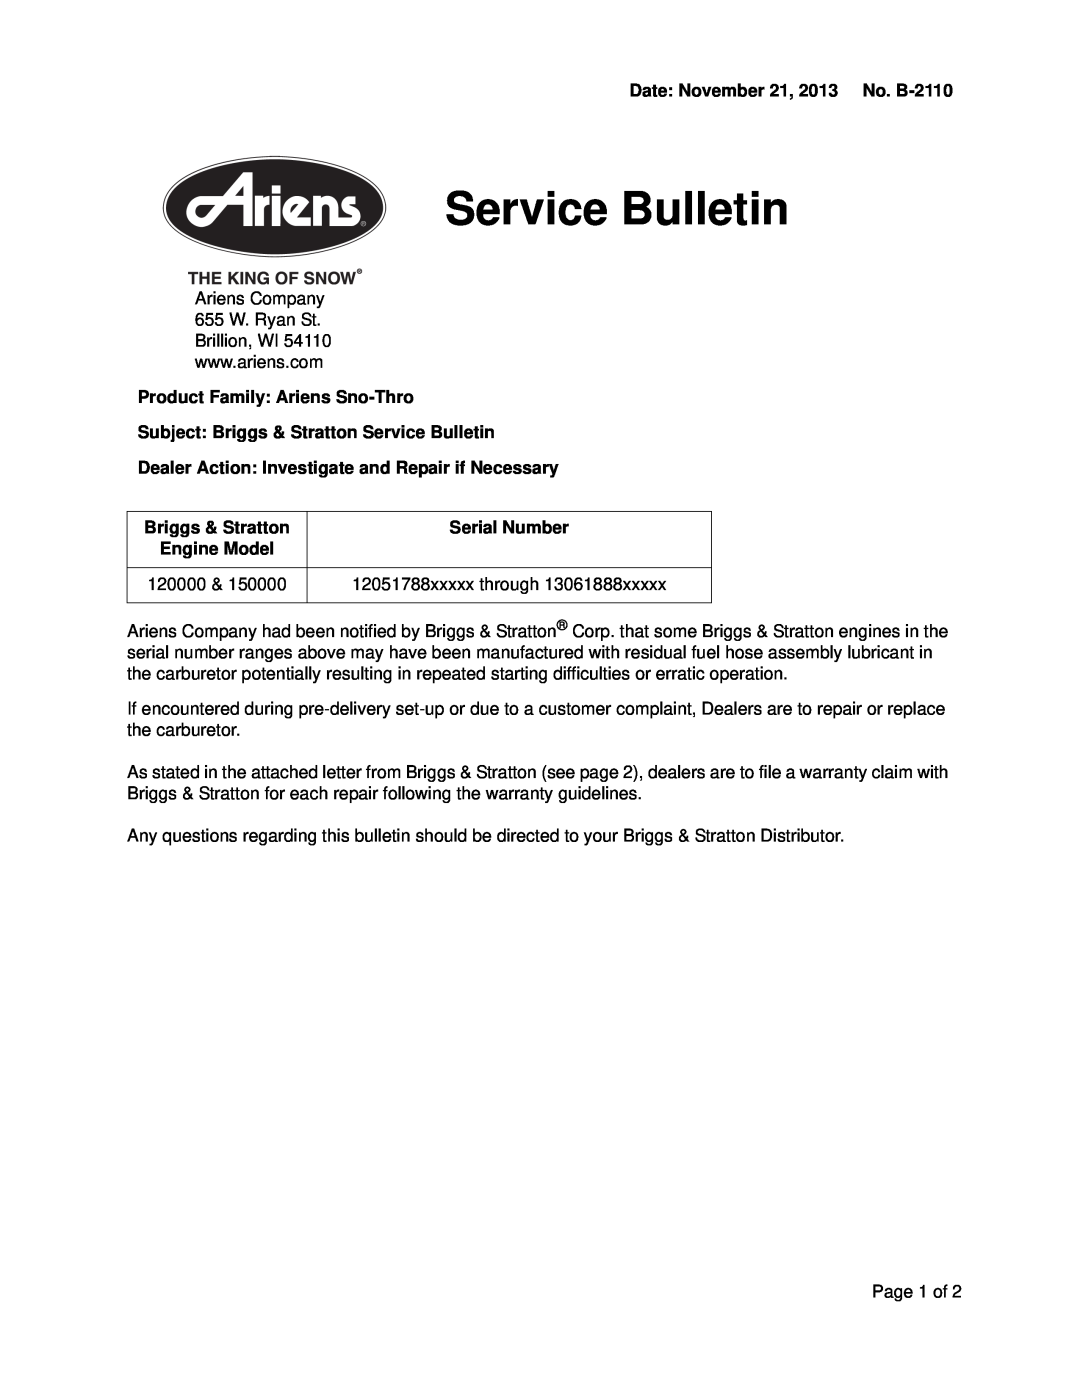 Ariens 150000 warranty Date November 21, 2013 No. B-2110, Product Family: Ariens Sno-Thro, Briggs & Stratton, 120000 